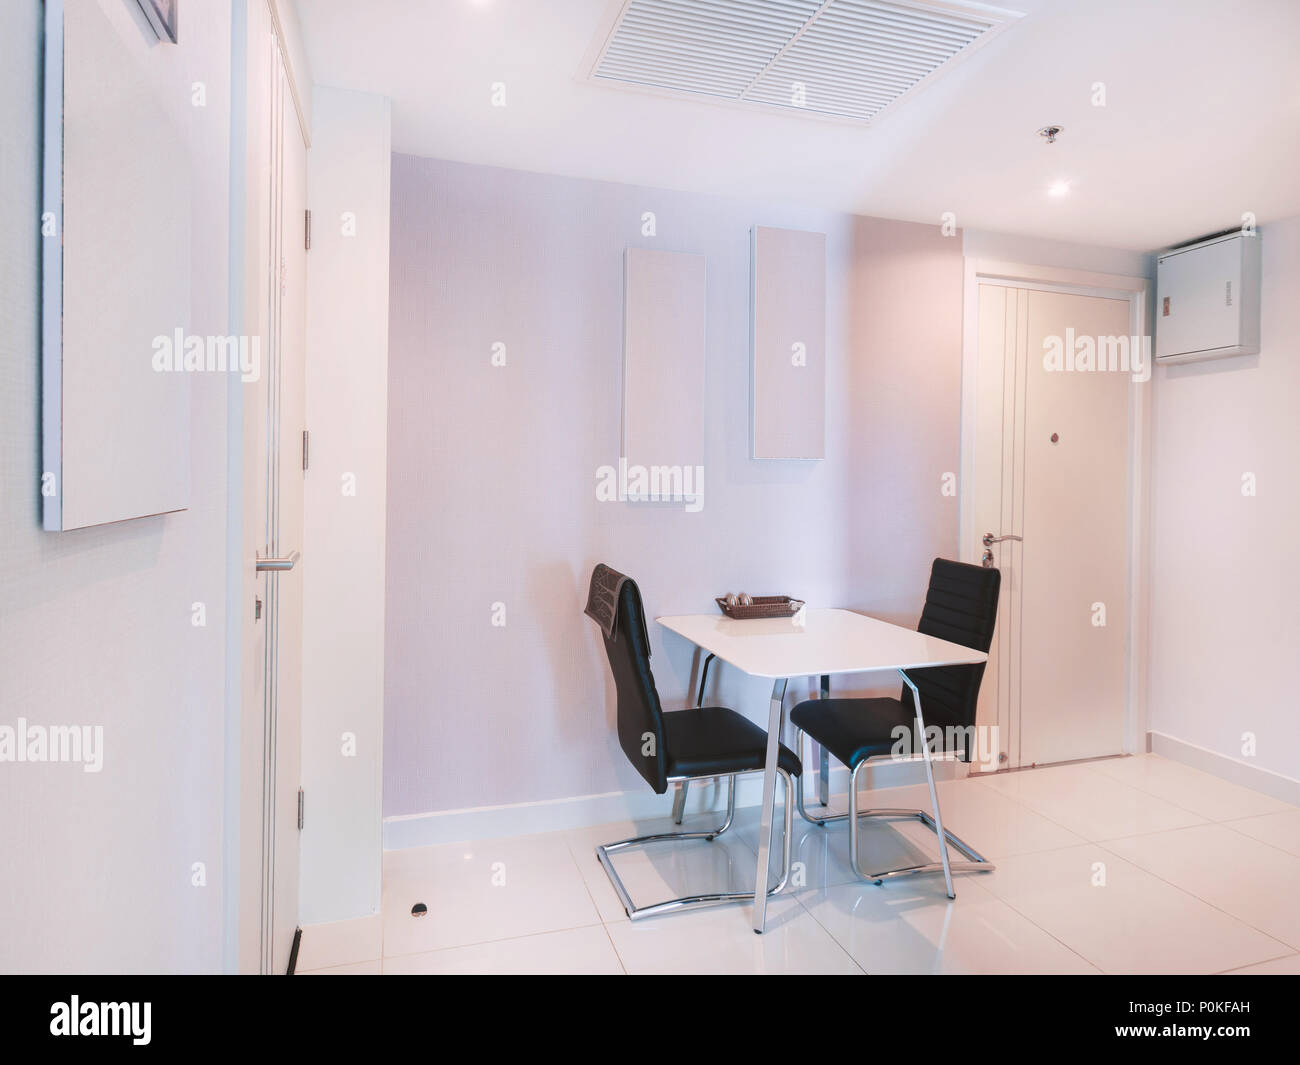 Chambre cuisine moderne blanc décoration mobilier d'intérieur avec table à manger avec une paire de fauteuils en cuir noir avec cadre en acier inoxydable Banque D'Images